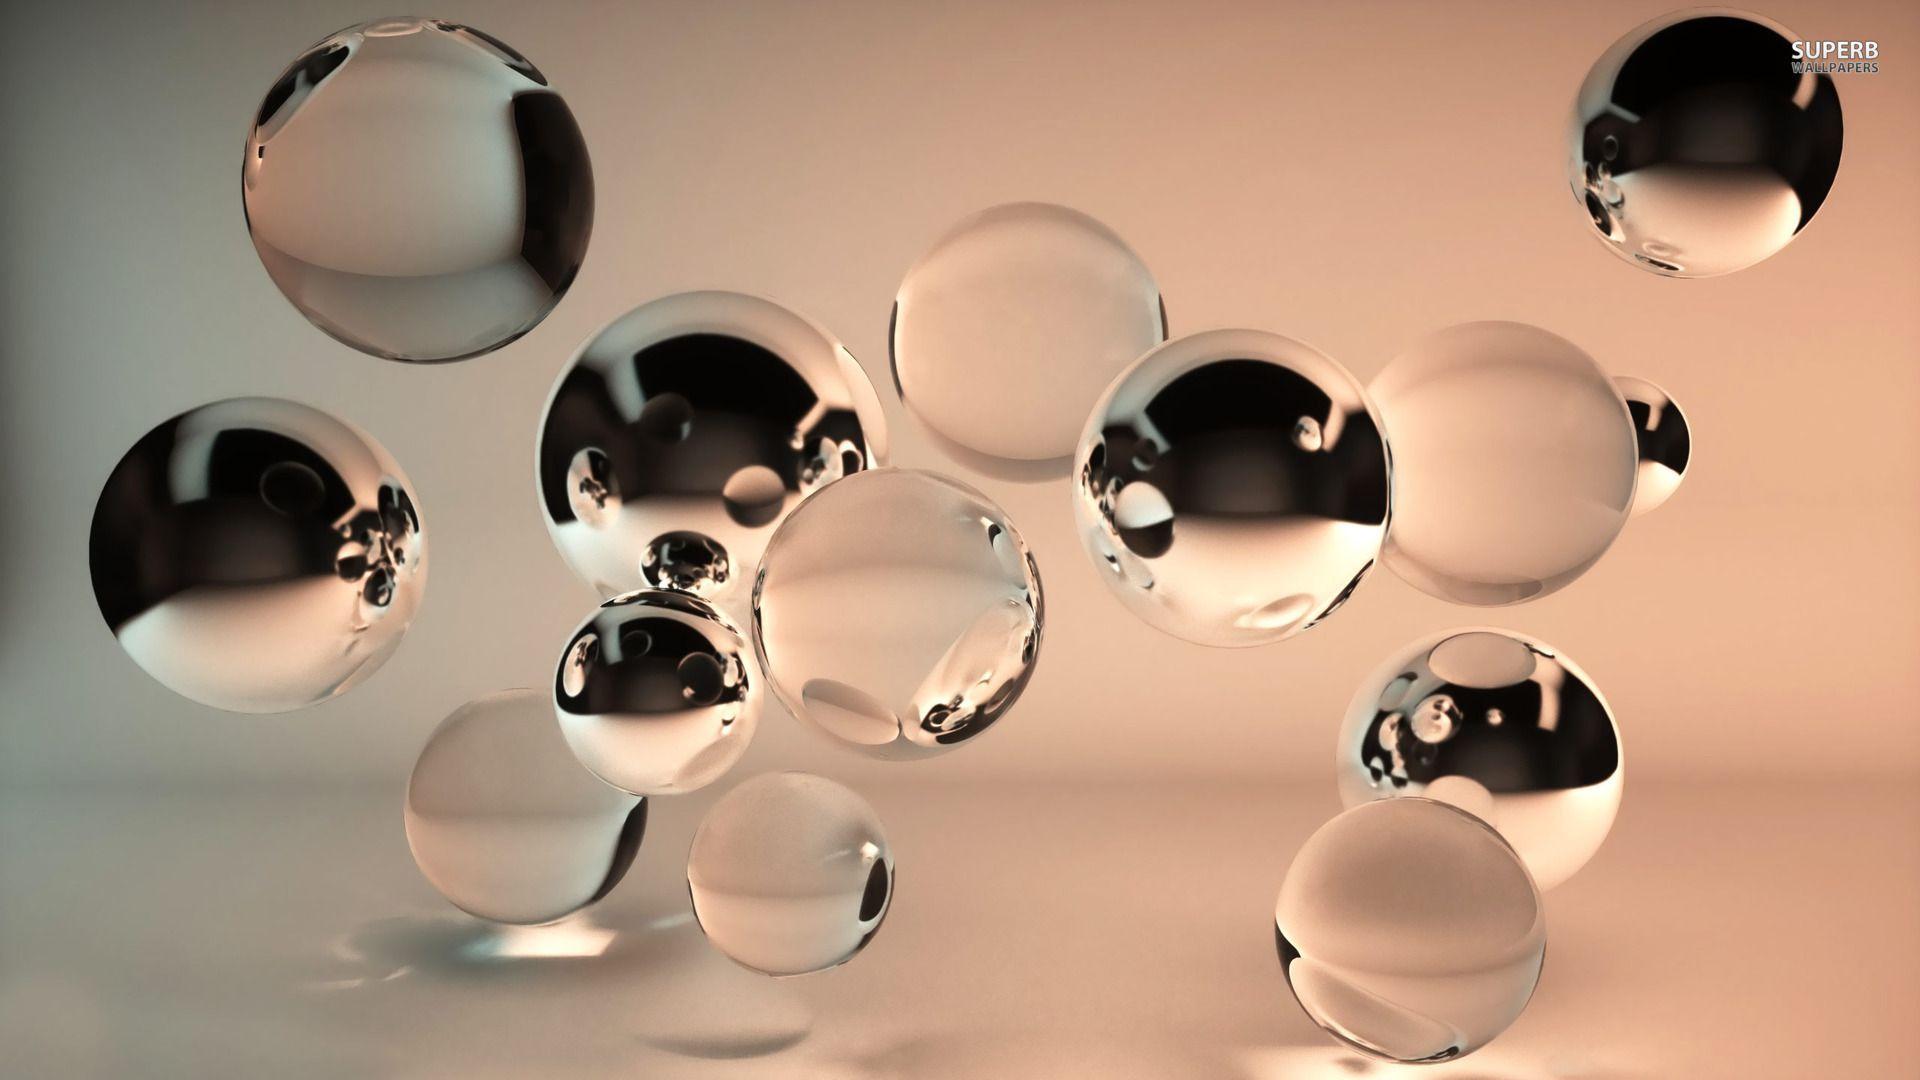 Translucent bubbles wallpaper wallpaper - #